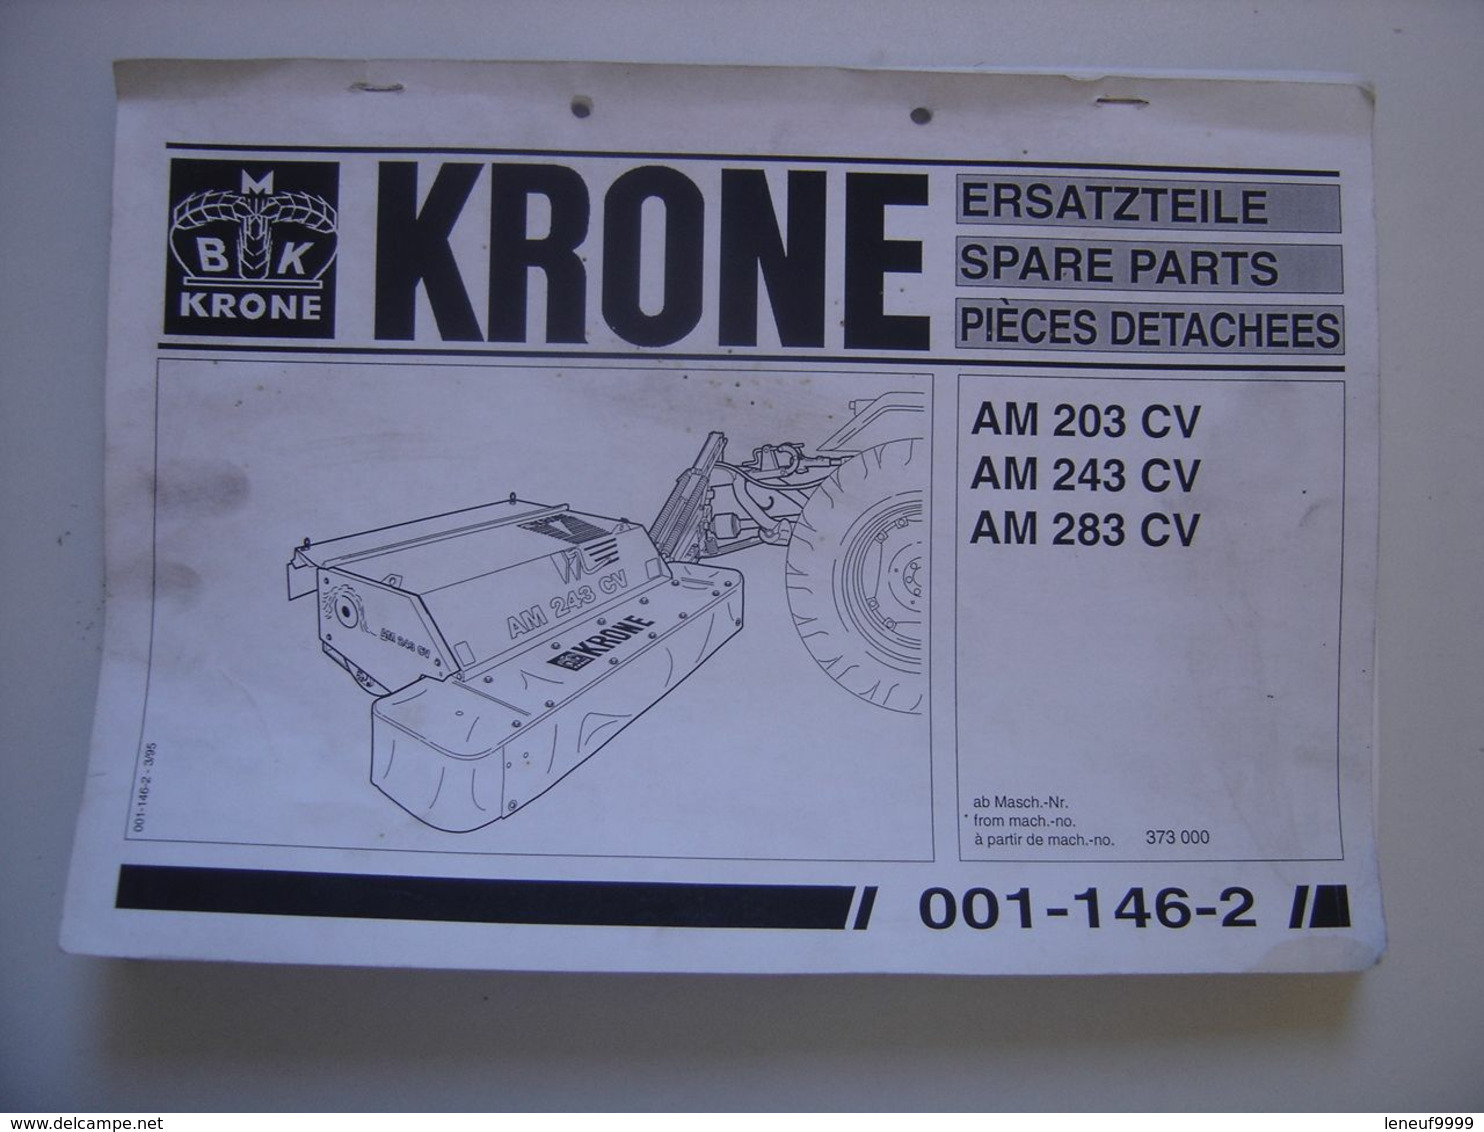 Manuel KRONE Materiel Agricole AM 203 CV Ersatzteile Spare Parts Pieces Detachee - Tracteurs